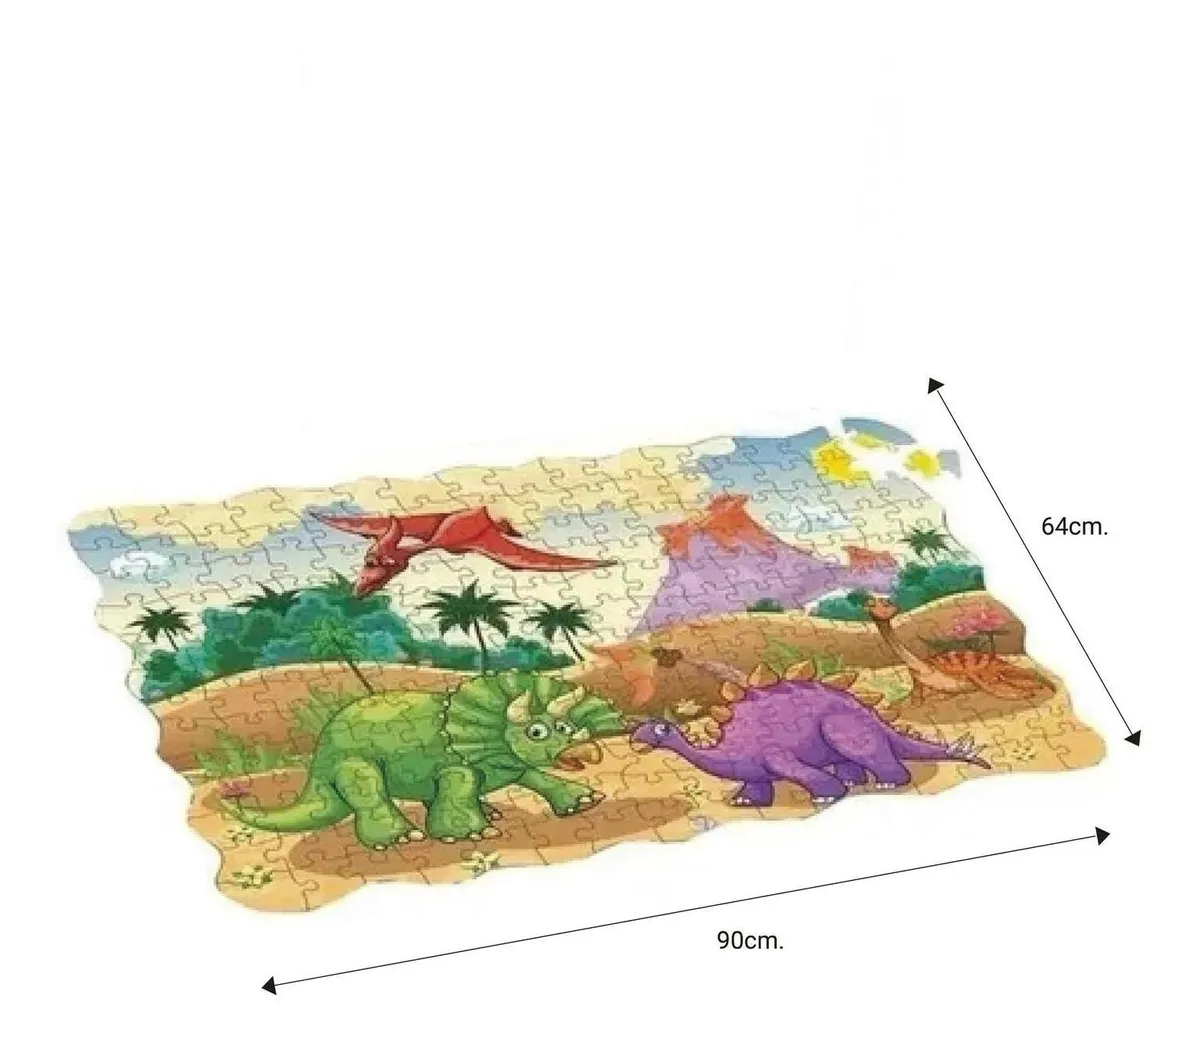 Juguete Puzzle infantil 420 pcs. Dinosaurios - 208pcs